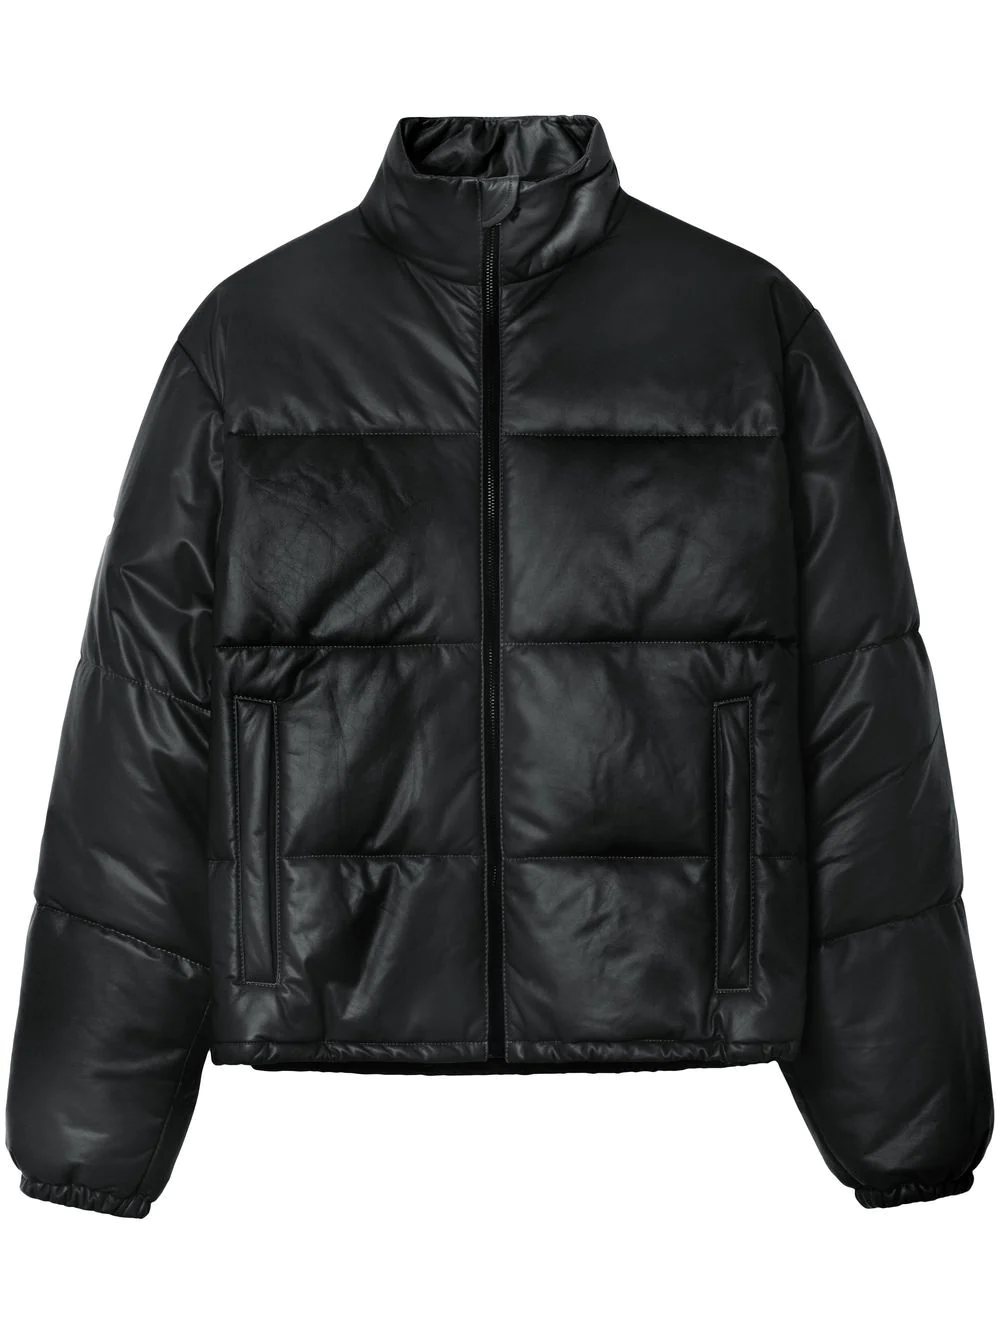 Topman faux leather puffer jacket in ecru | ASOS